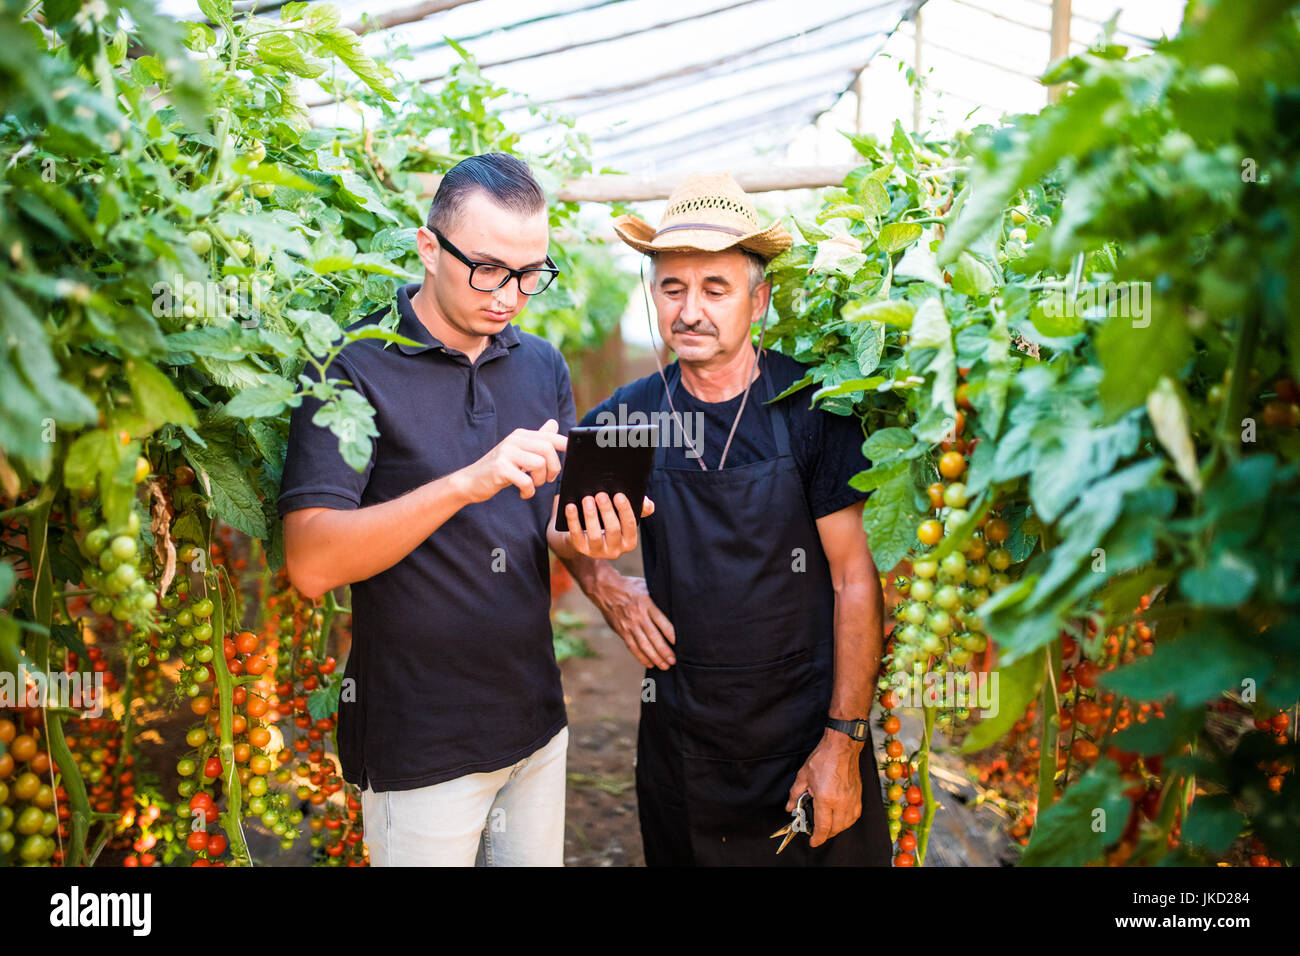 Zwei Landwirtschaft Landwirt Arbeiter Ckecking Bestellungen von Cherry-Tomate auf Tablet von Kunden im Gewächshaus. Unternehmen Landwirtschaft Landwirtschaft Stockfoto